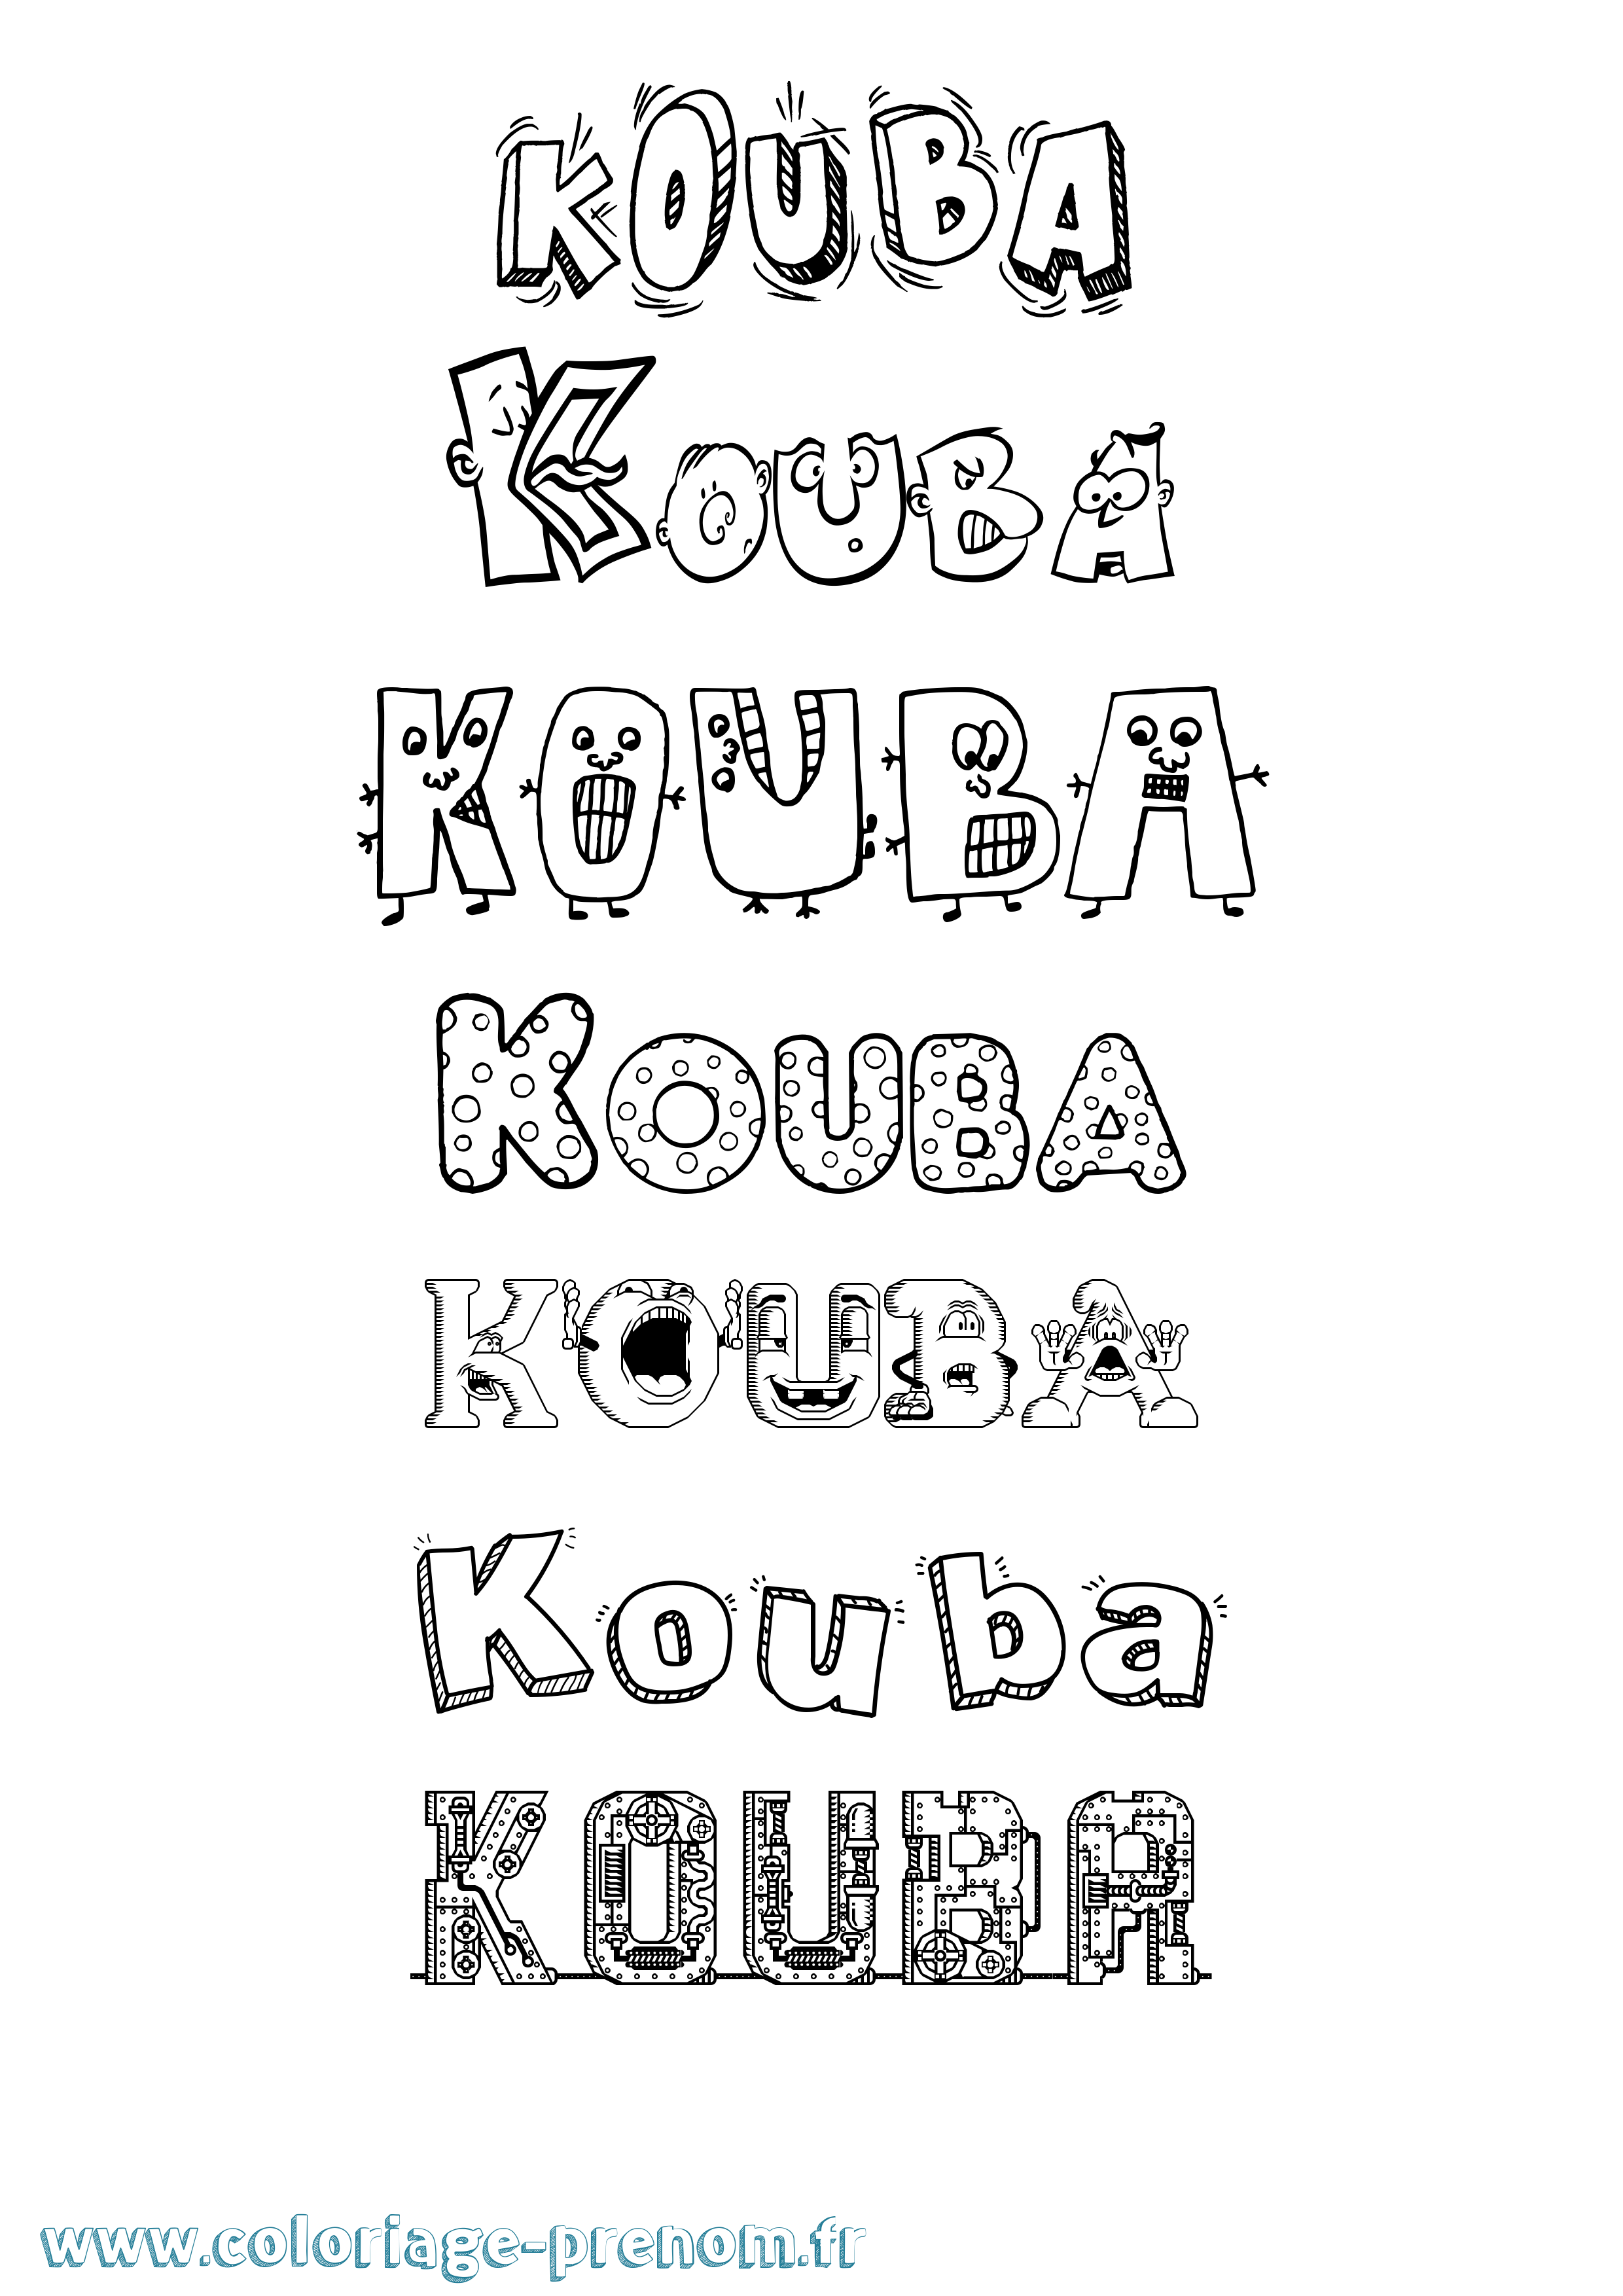 Coloriage prénom Kouba Fun